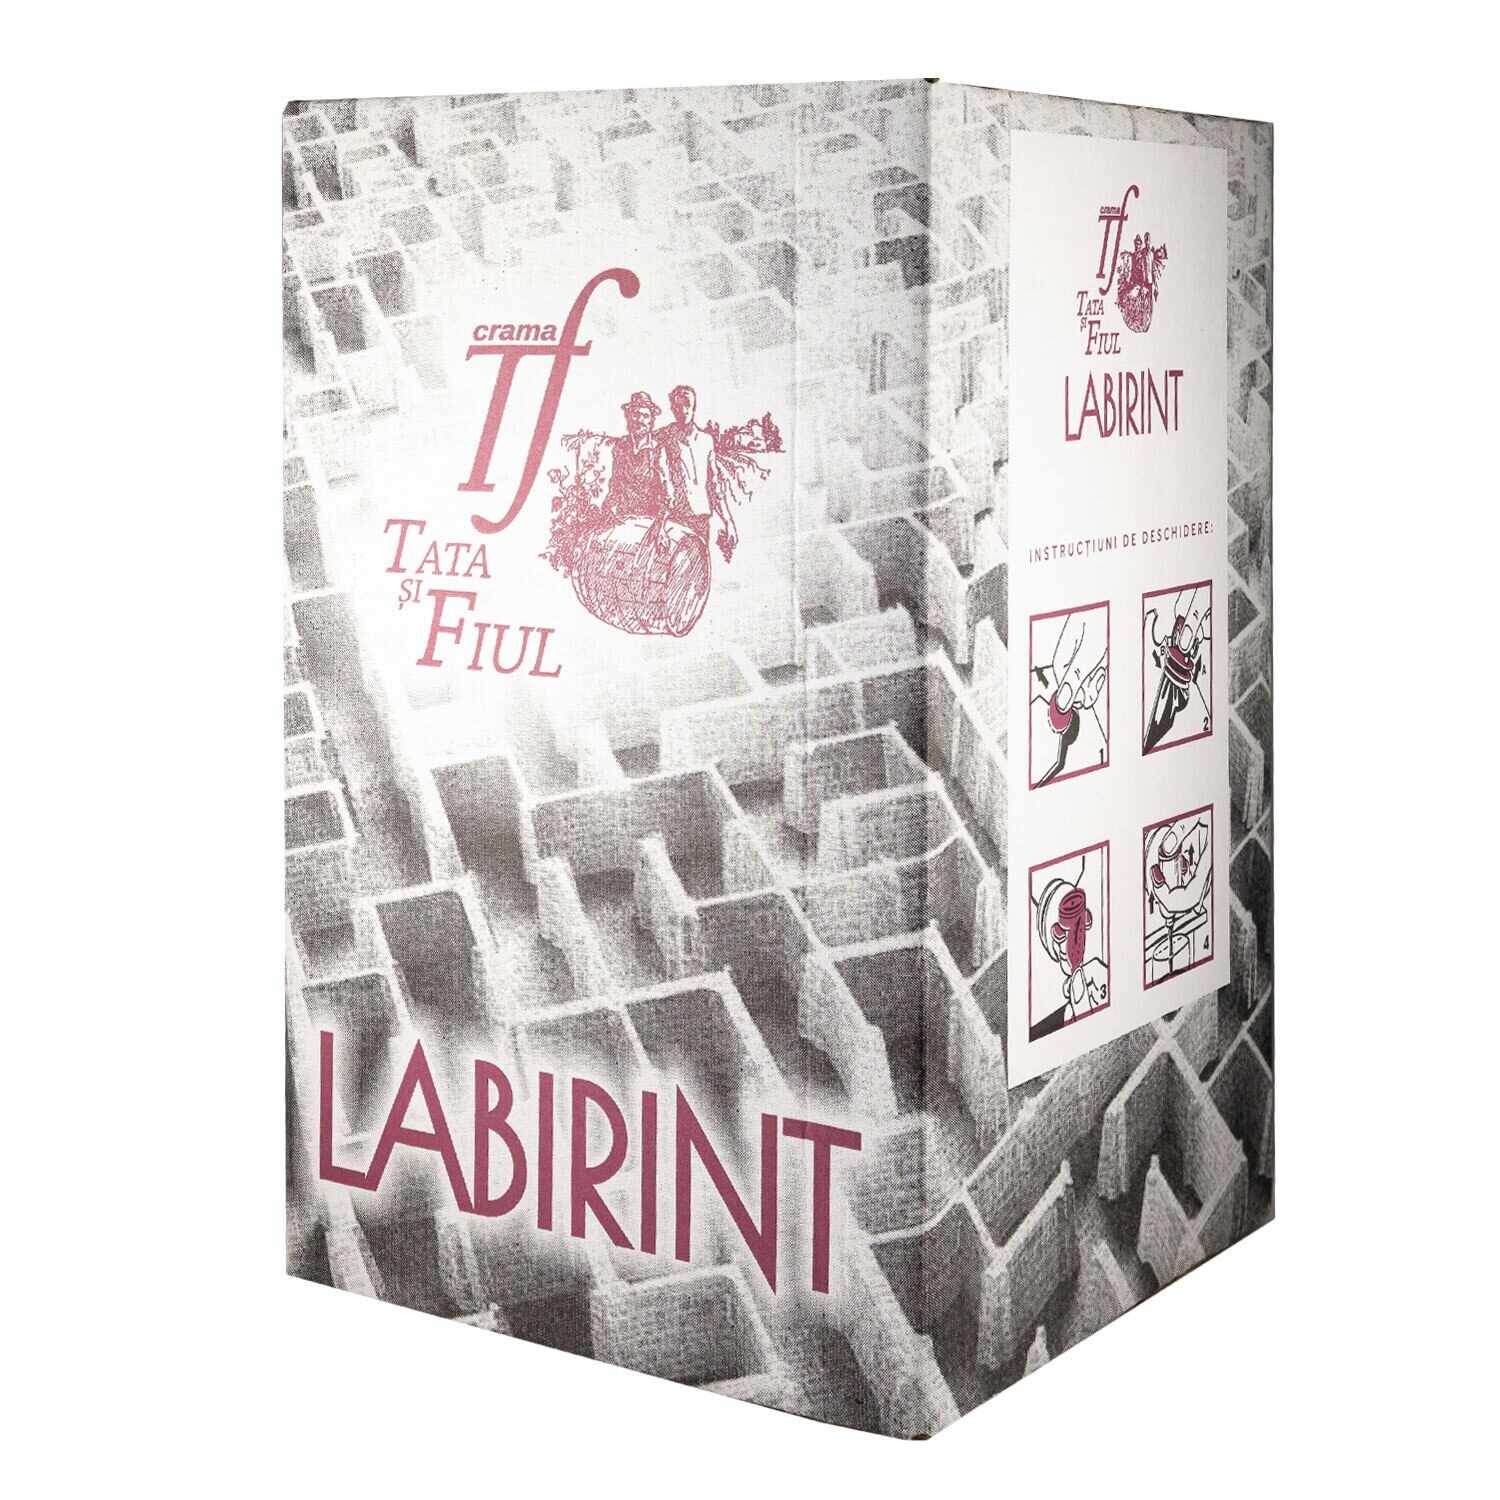 Vin roze Labirint roze demisec bag in box 10 L